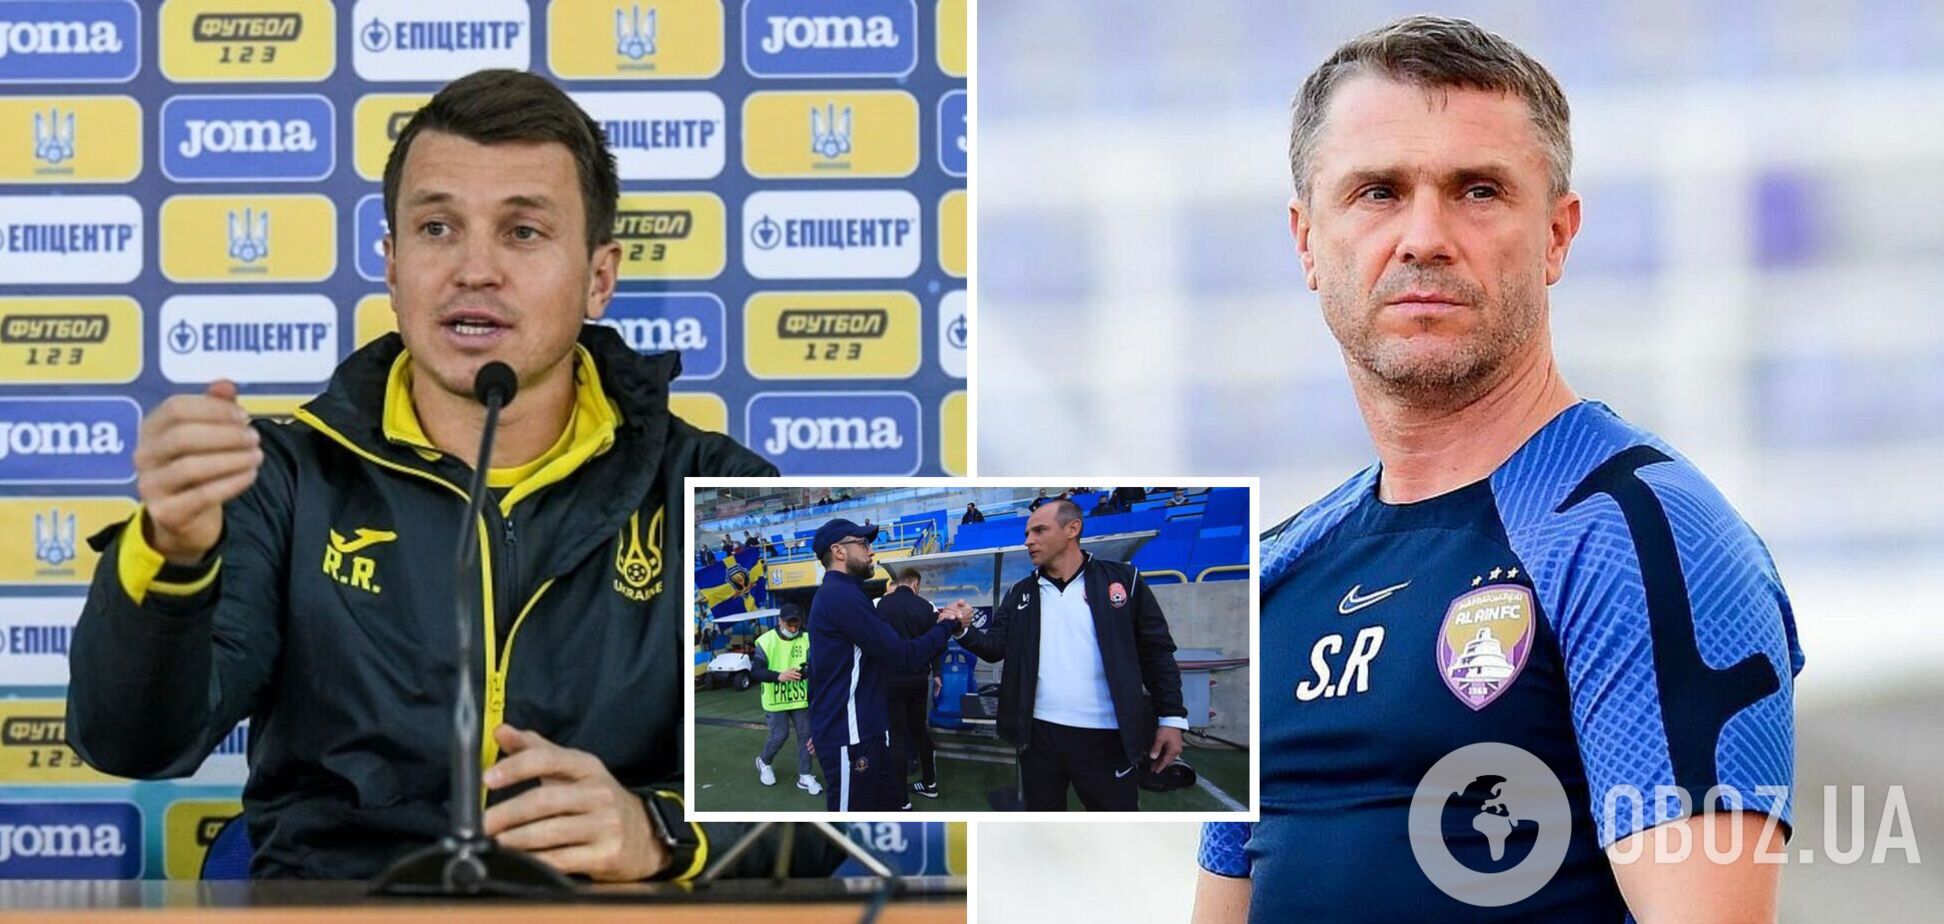 Официально: сборная Украины по футболу получила нового главного тренера